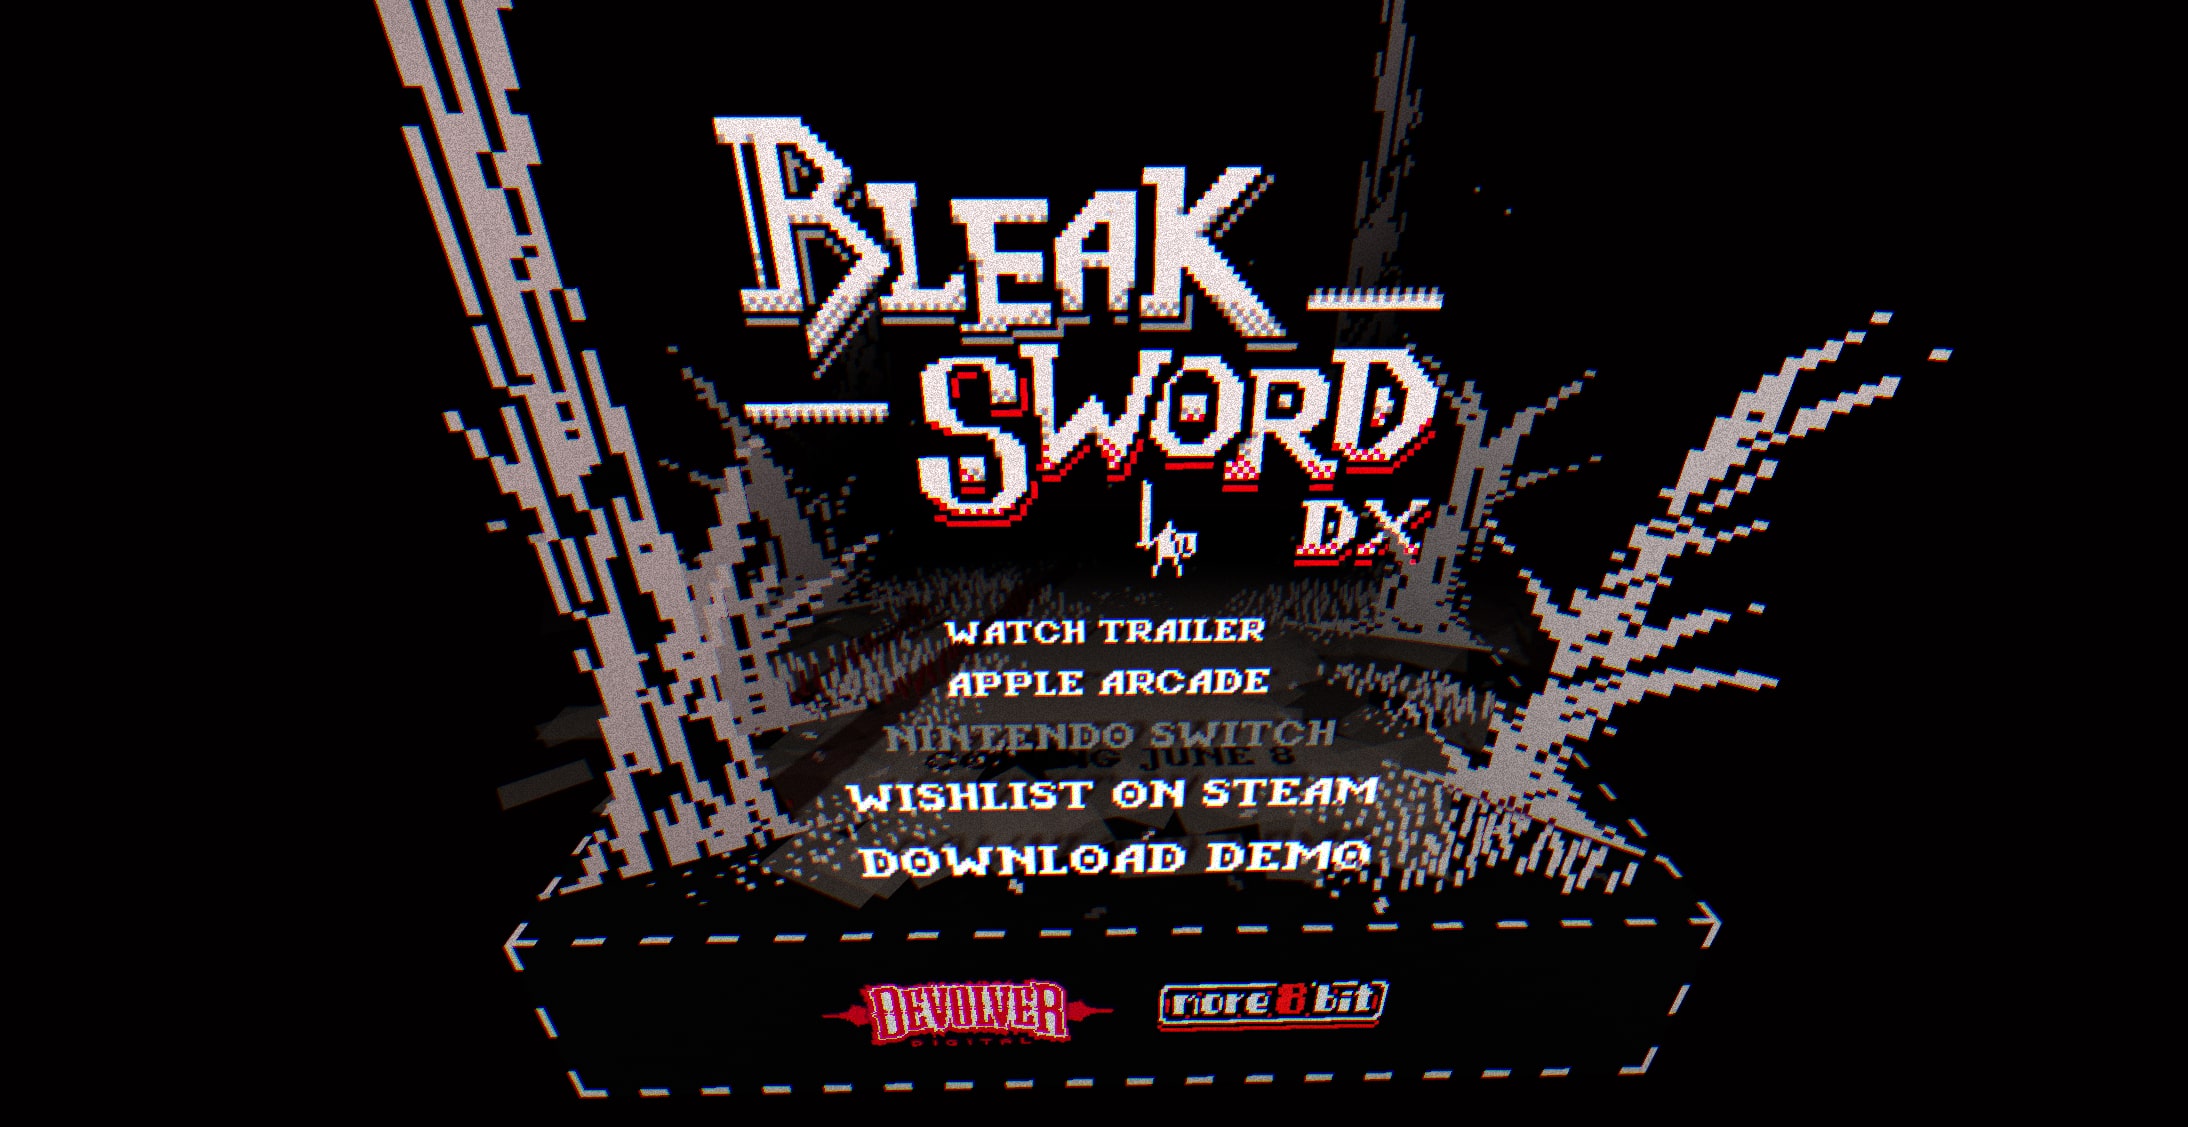 Bleak Sword DX